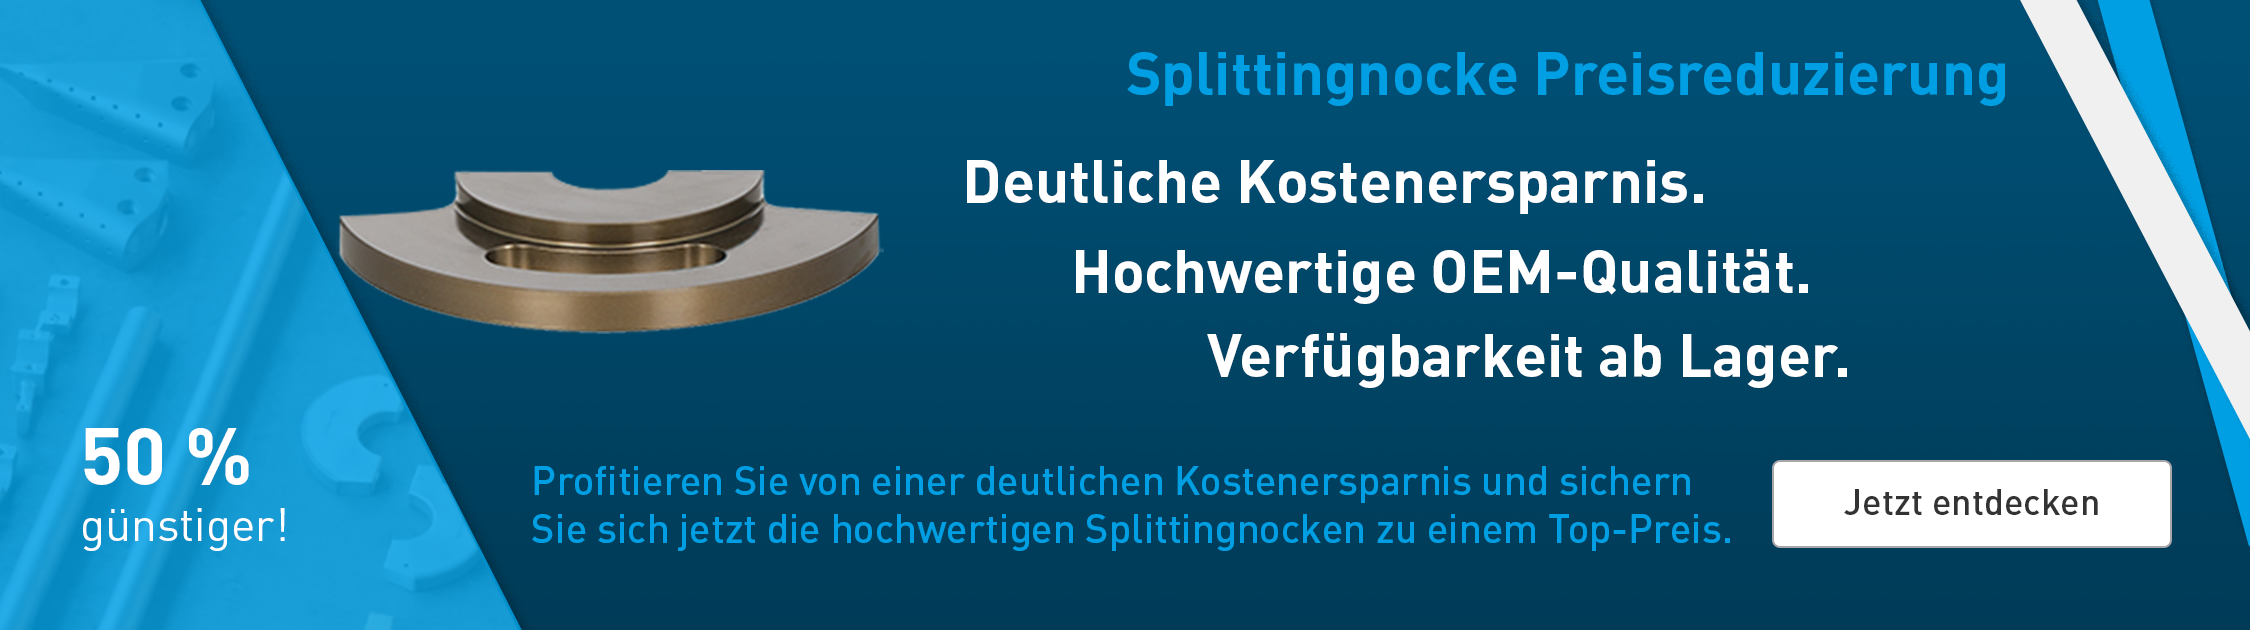 Splittingnocke_Banner_DE